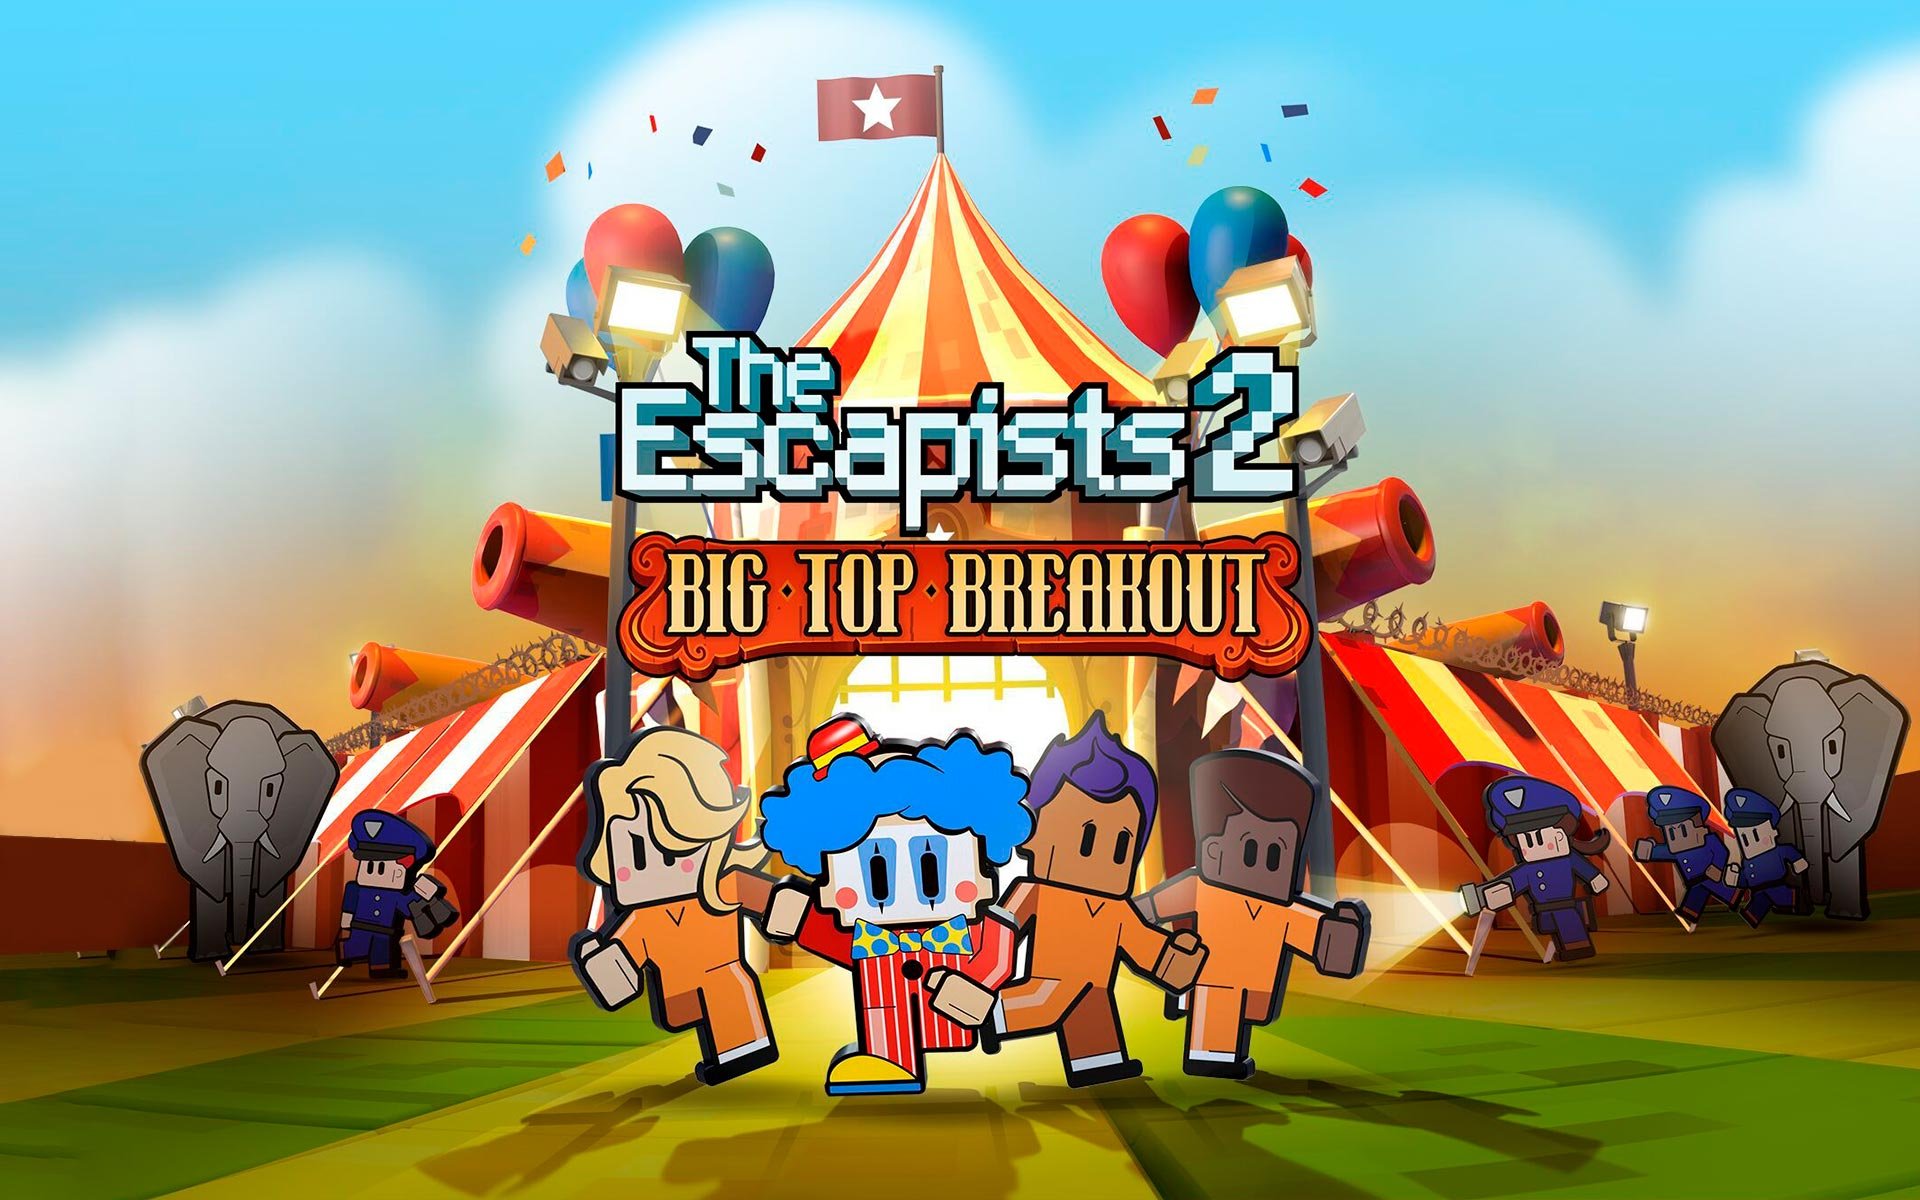 The Escapists 2 - Big Top Breakout (DLC) por R$ 8.39